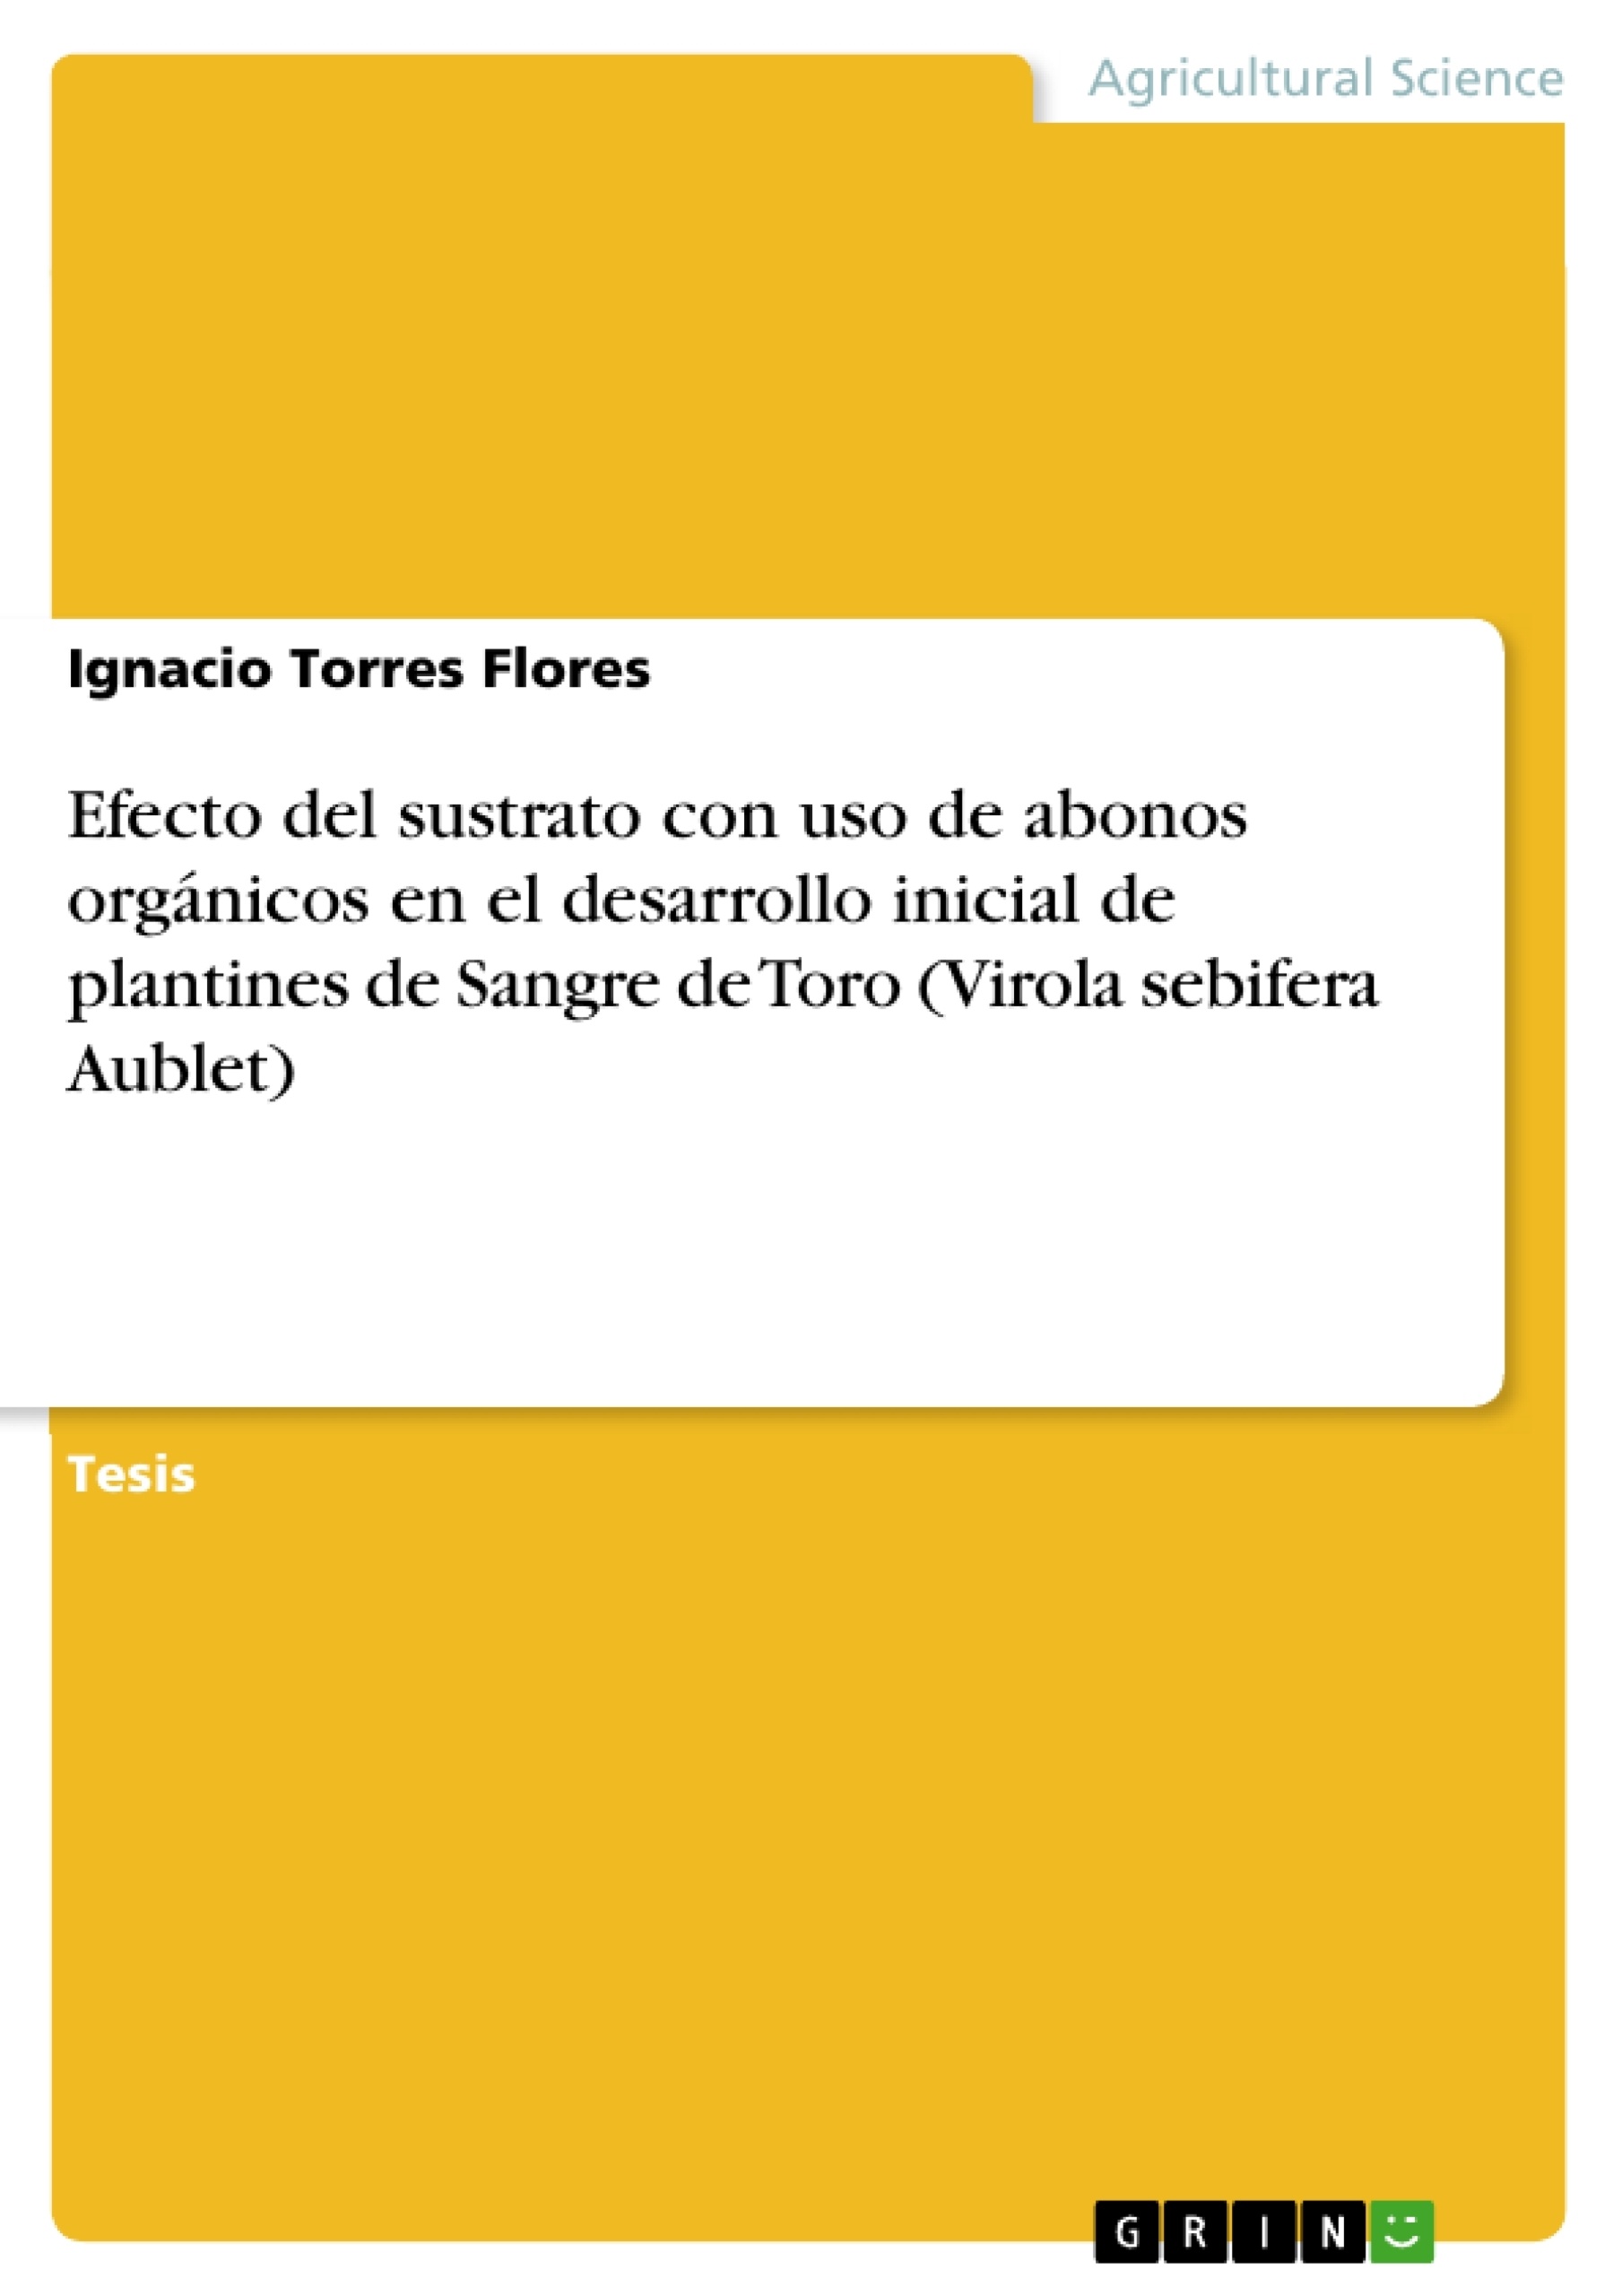 Título: Efecto del sustrato con uso de abonos orgánicos en el desarrollo inicial de plantines de Sangre de Toro (Virola sebifera Aublet)